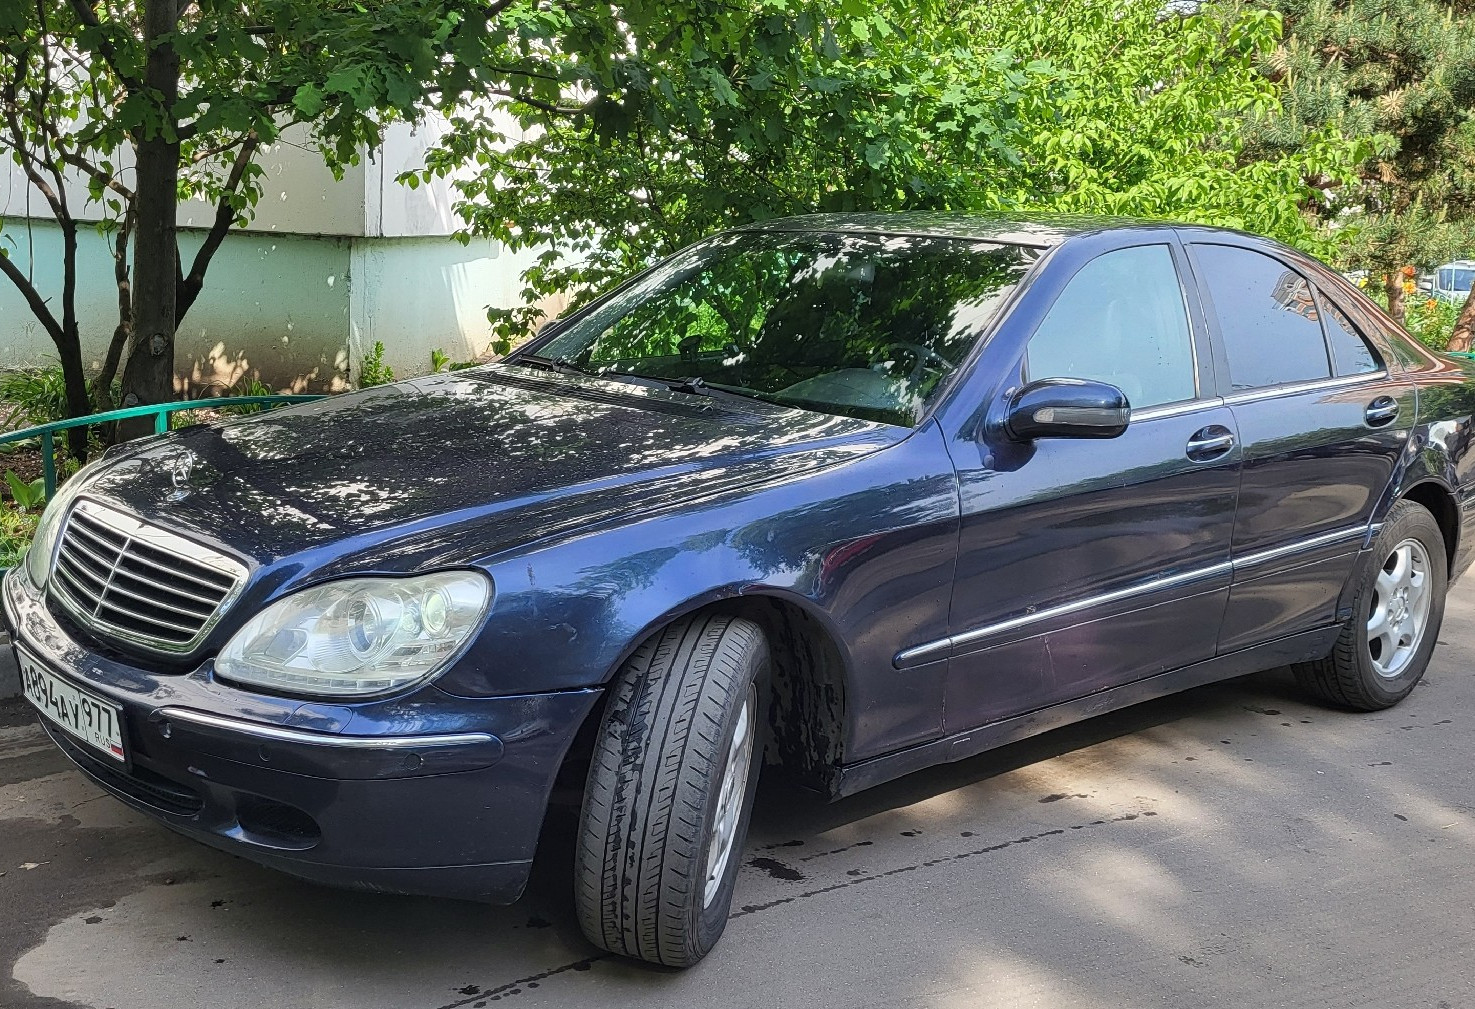 Аренда mercedes-benz s-klass стандарт класса 2001 года в городе Москва Люблино от 4000 руб./сутки, задний привод, двигатель: бензин, объем 3.2 литра, ОСАГО (Мультидрайв), без водителя, недорого, вид 2 - RentRide